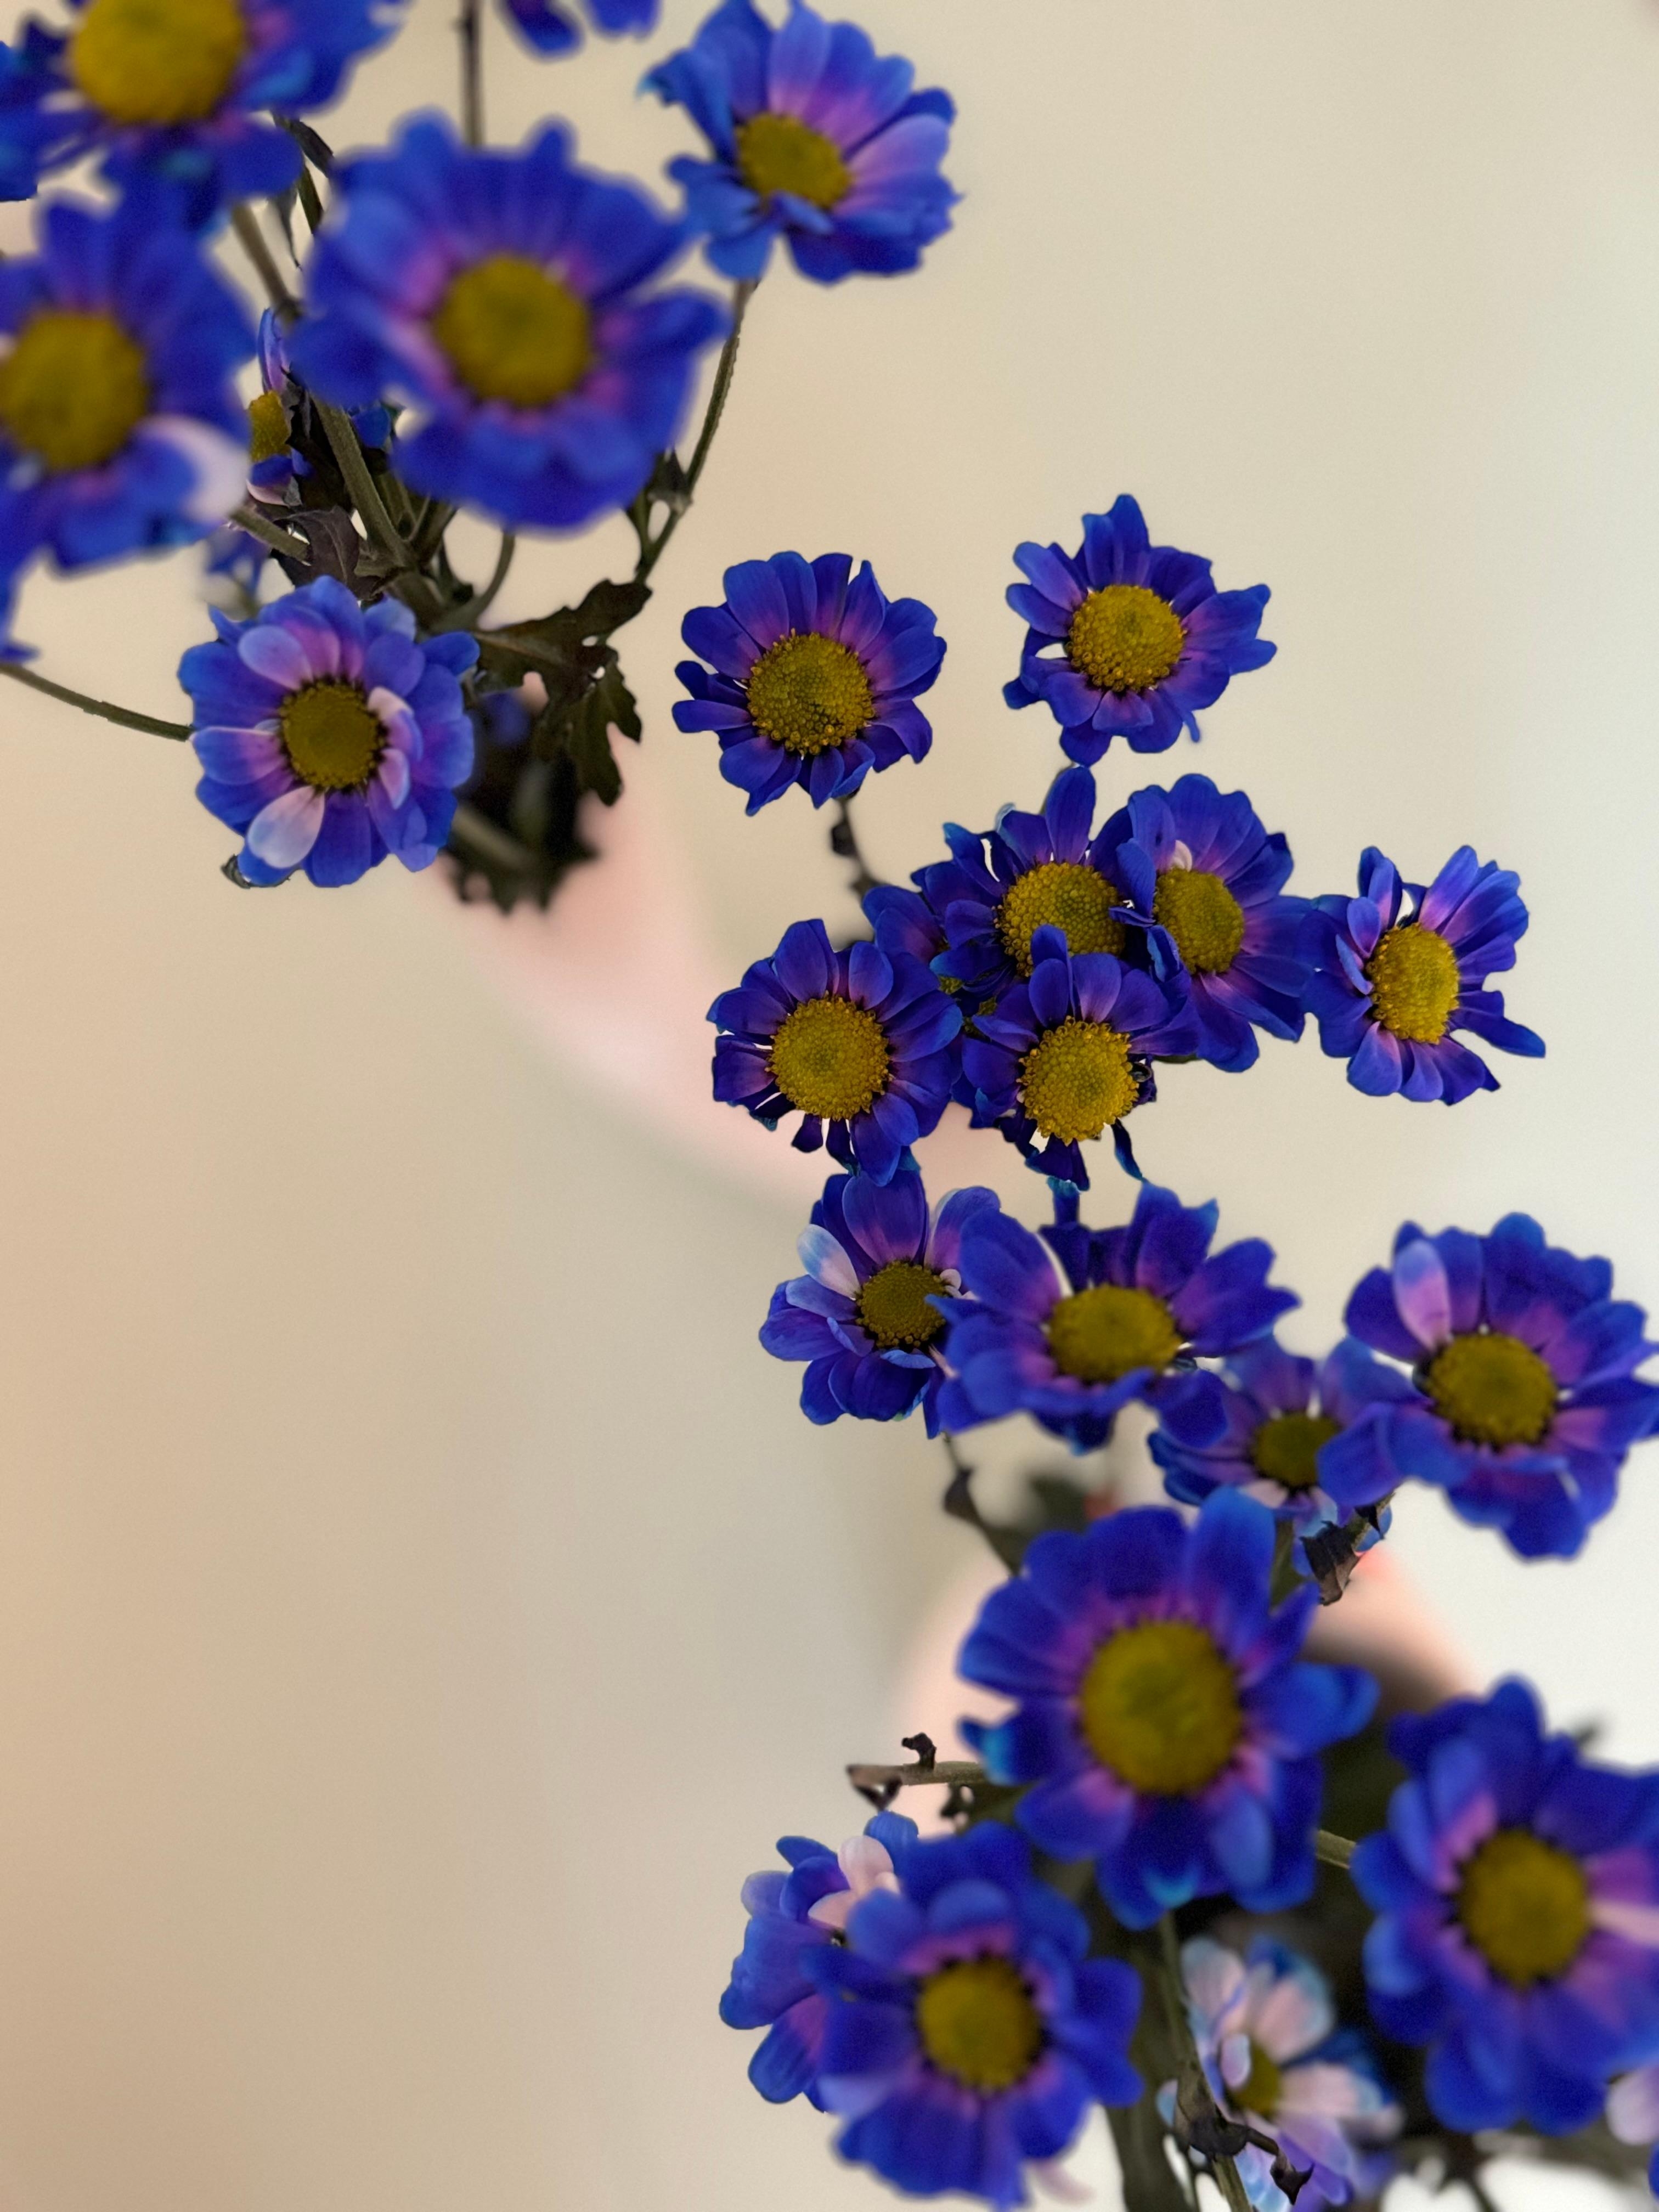 Versuche weiter den #Frühling zu locken..#Blumen #Freshflowers #Blumenliebe #Pastell und #Blau #bunteswohnen #Wohnzimmer #Livingroom #couchstyle 